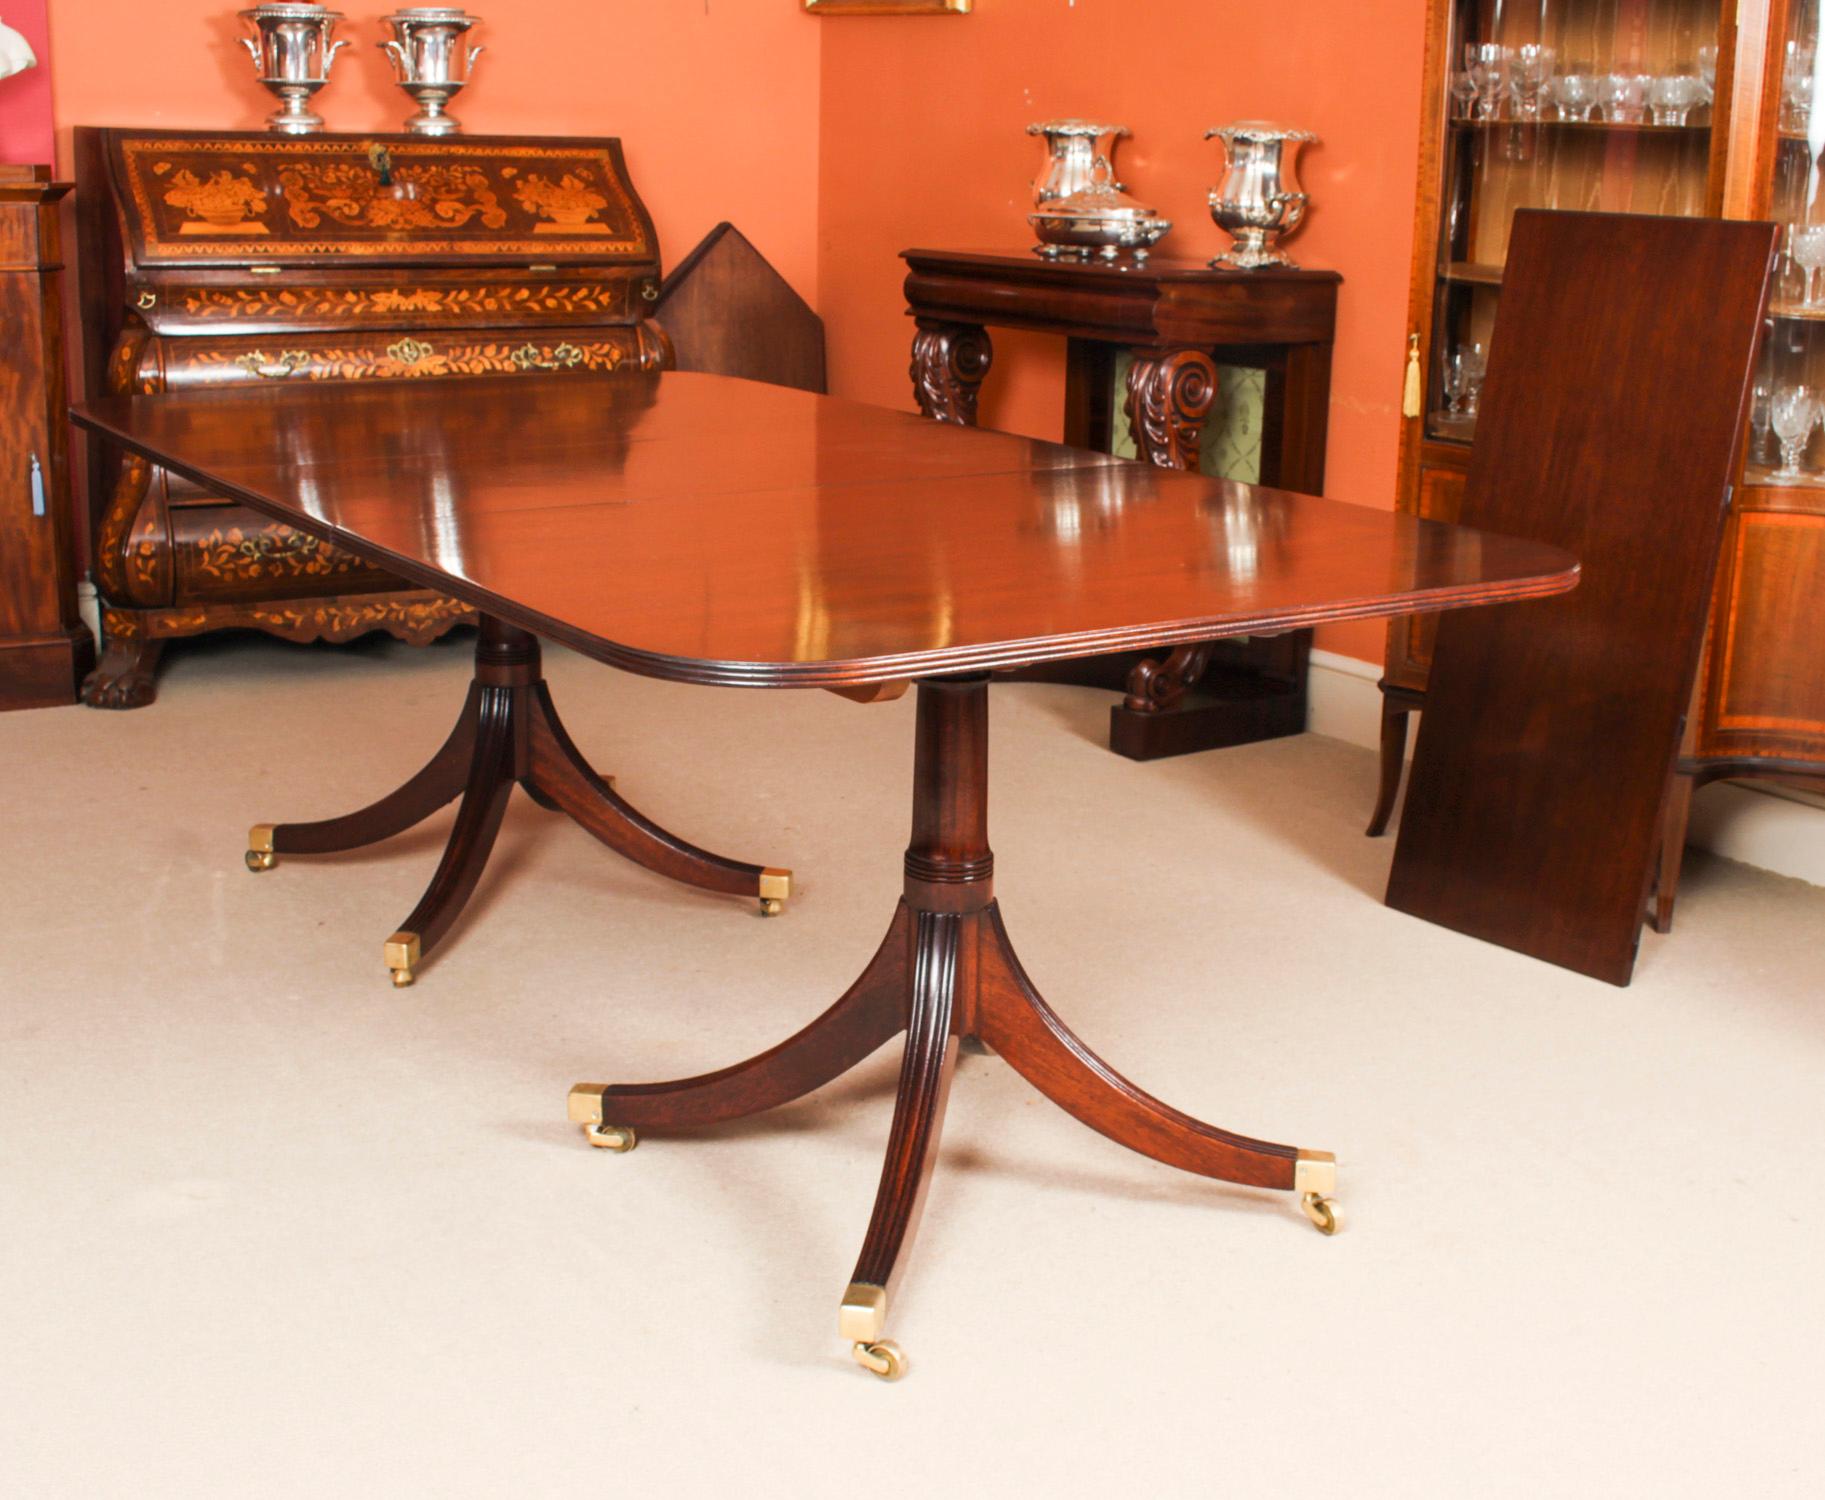 Mahogany Vintage Regency Revival Twin Pillar Dining Table by William Tillman 20th C